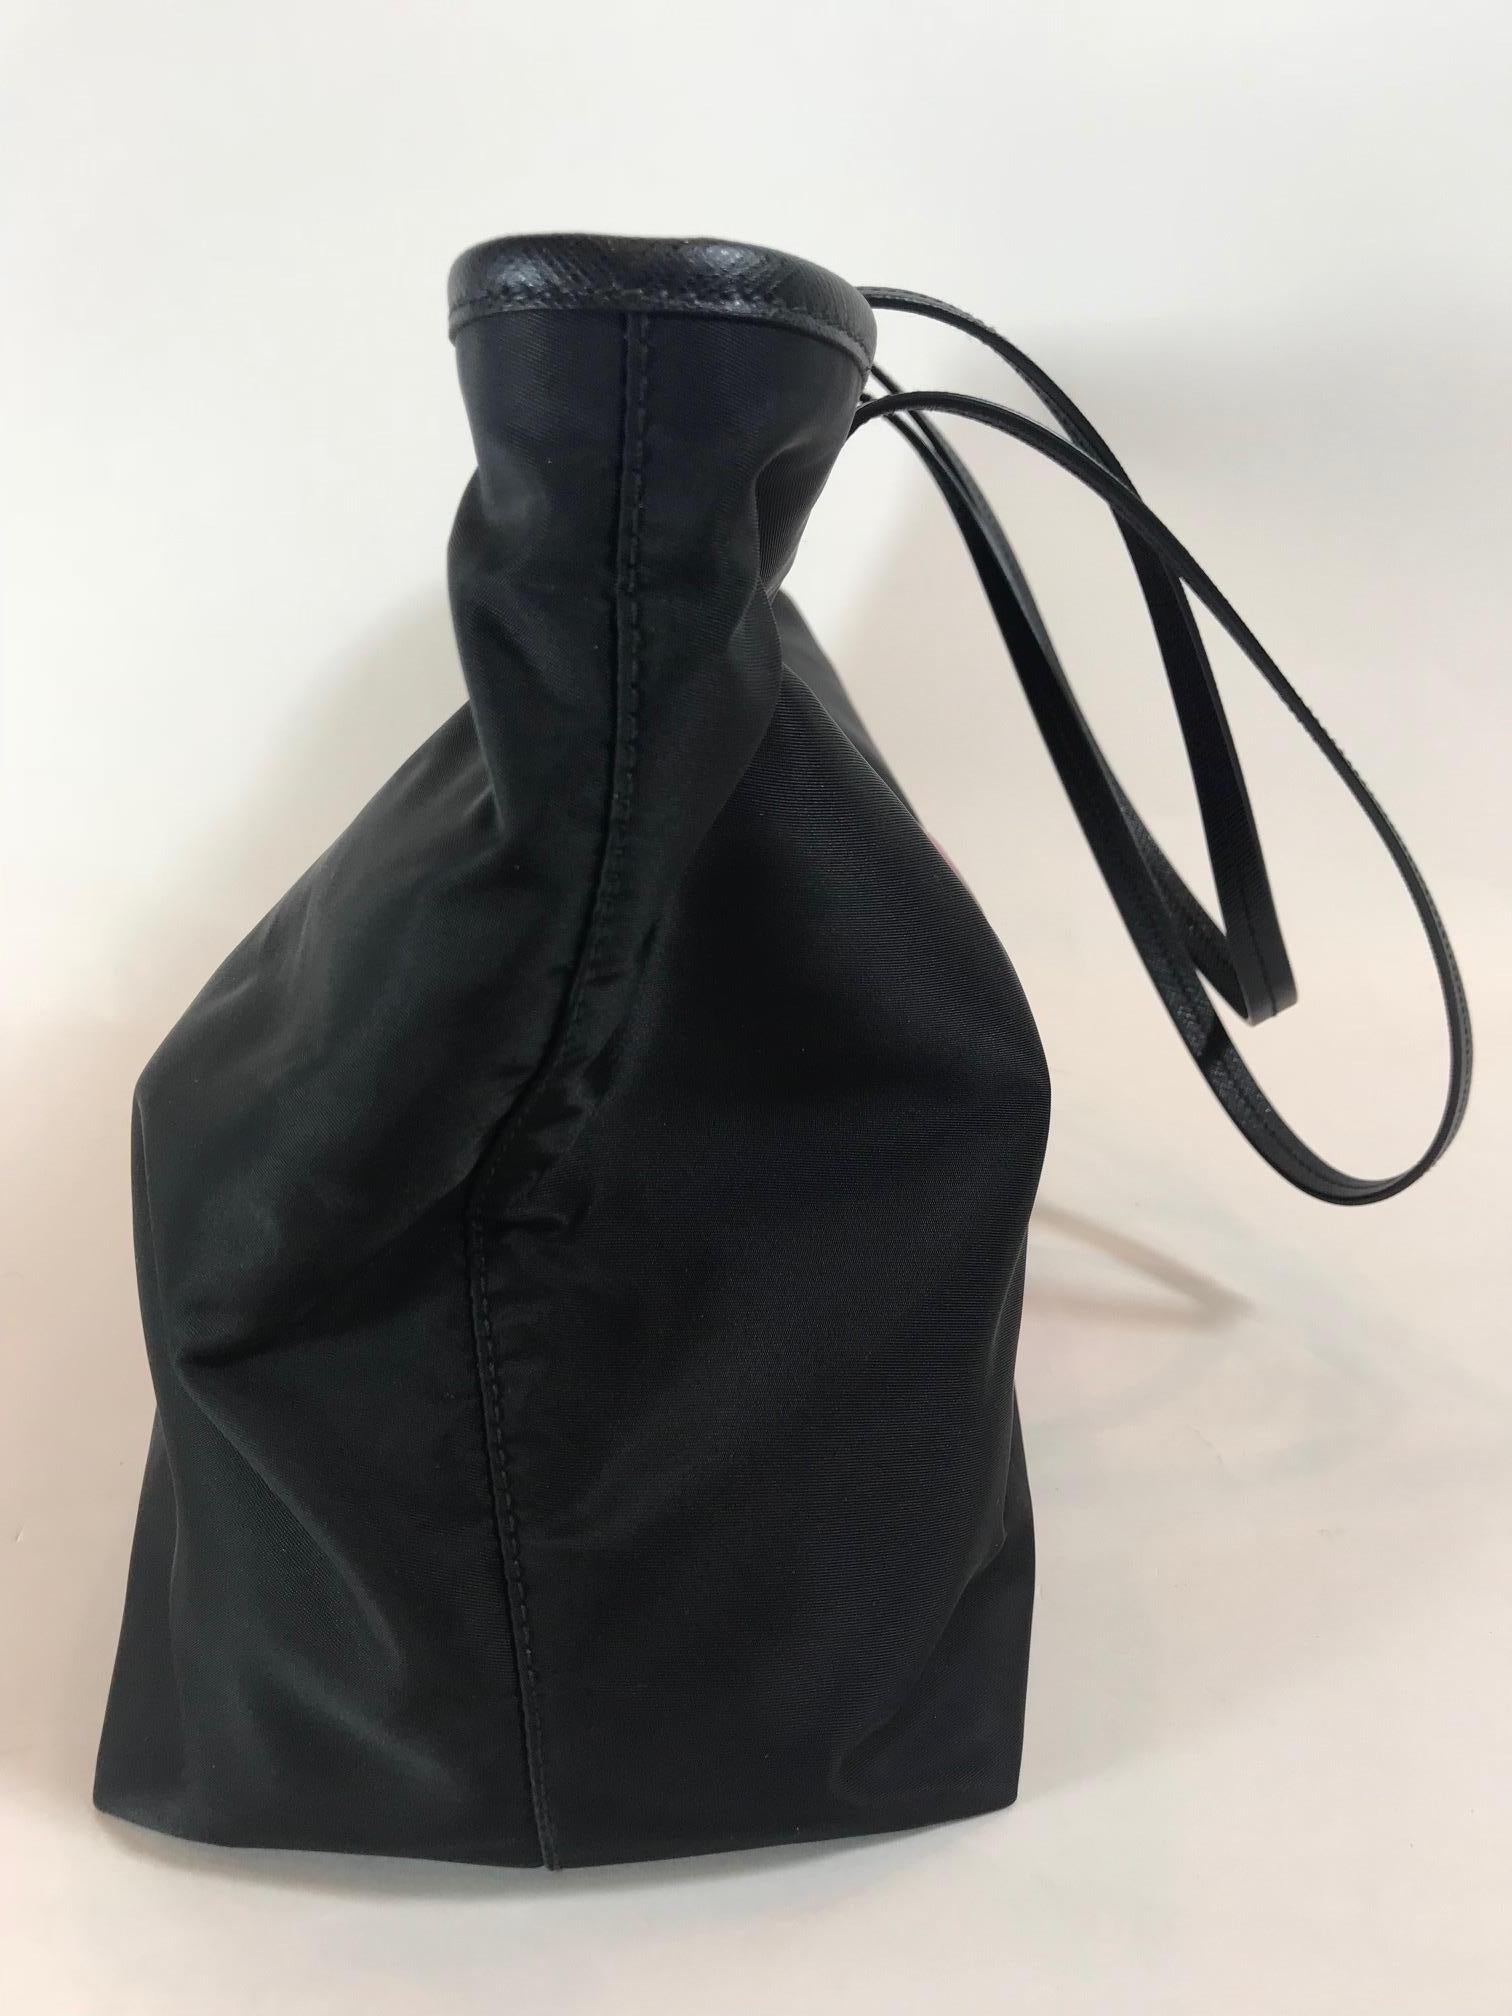 Black nylon featuring velvet buckle trompe l'oeil design. Dual flat leather shoulder straps, 10